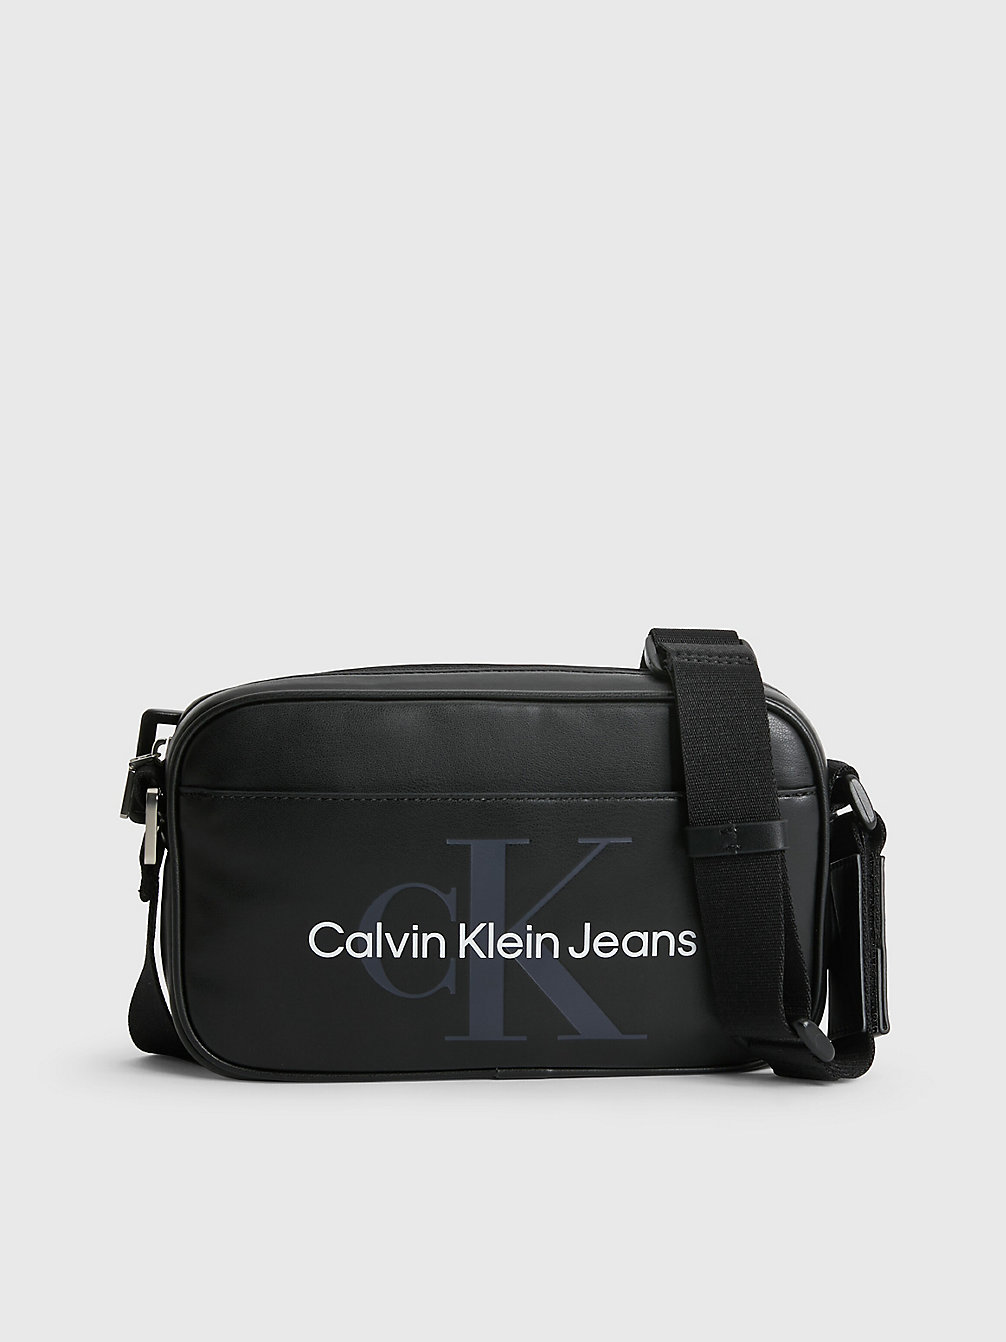 BLACK > Converteerbare Crossover > undefined heren - Calvin Klein